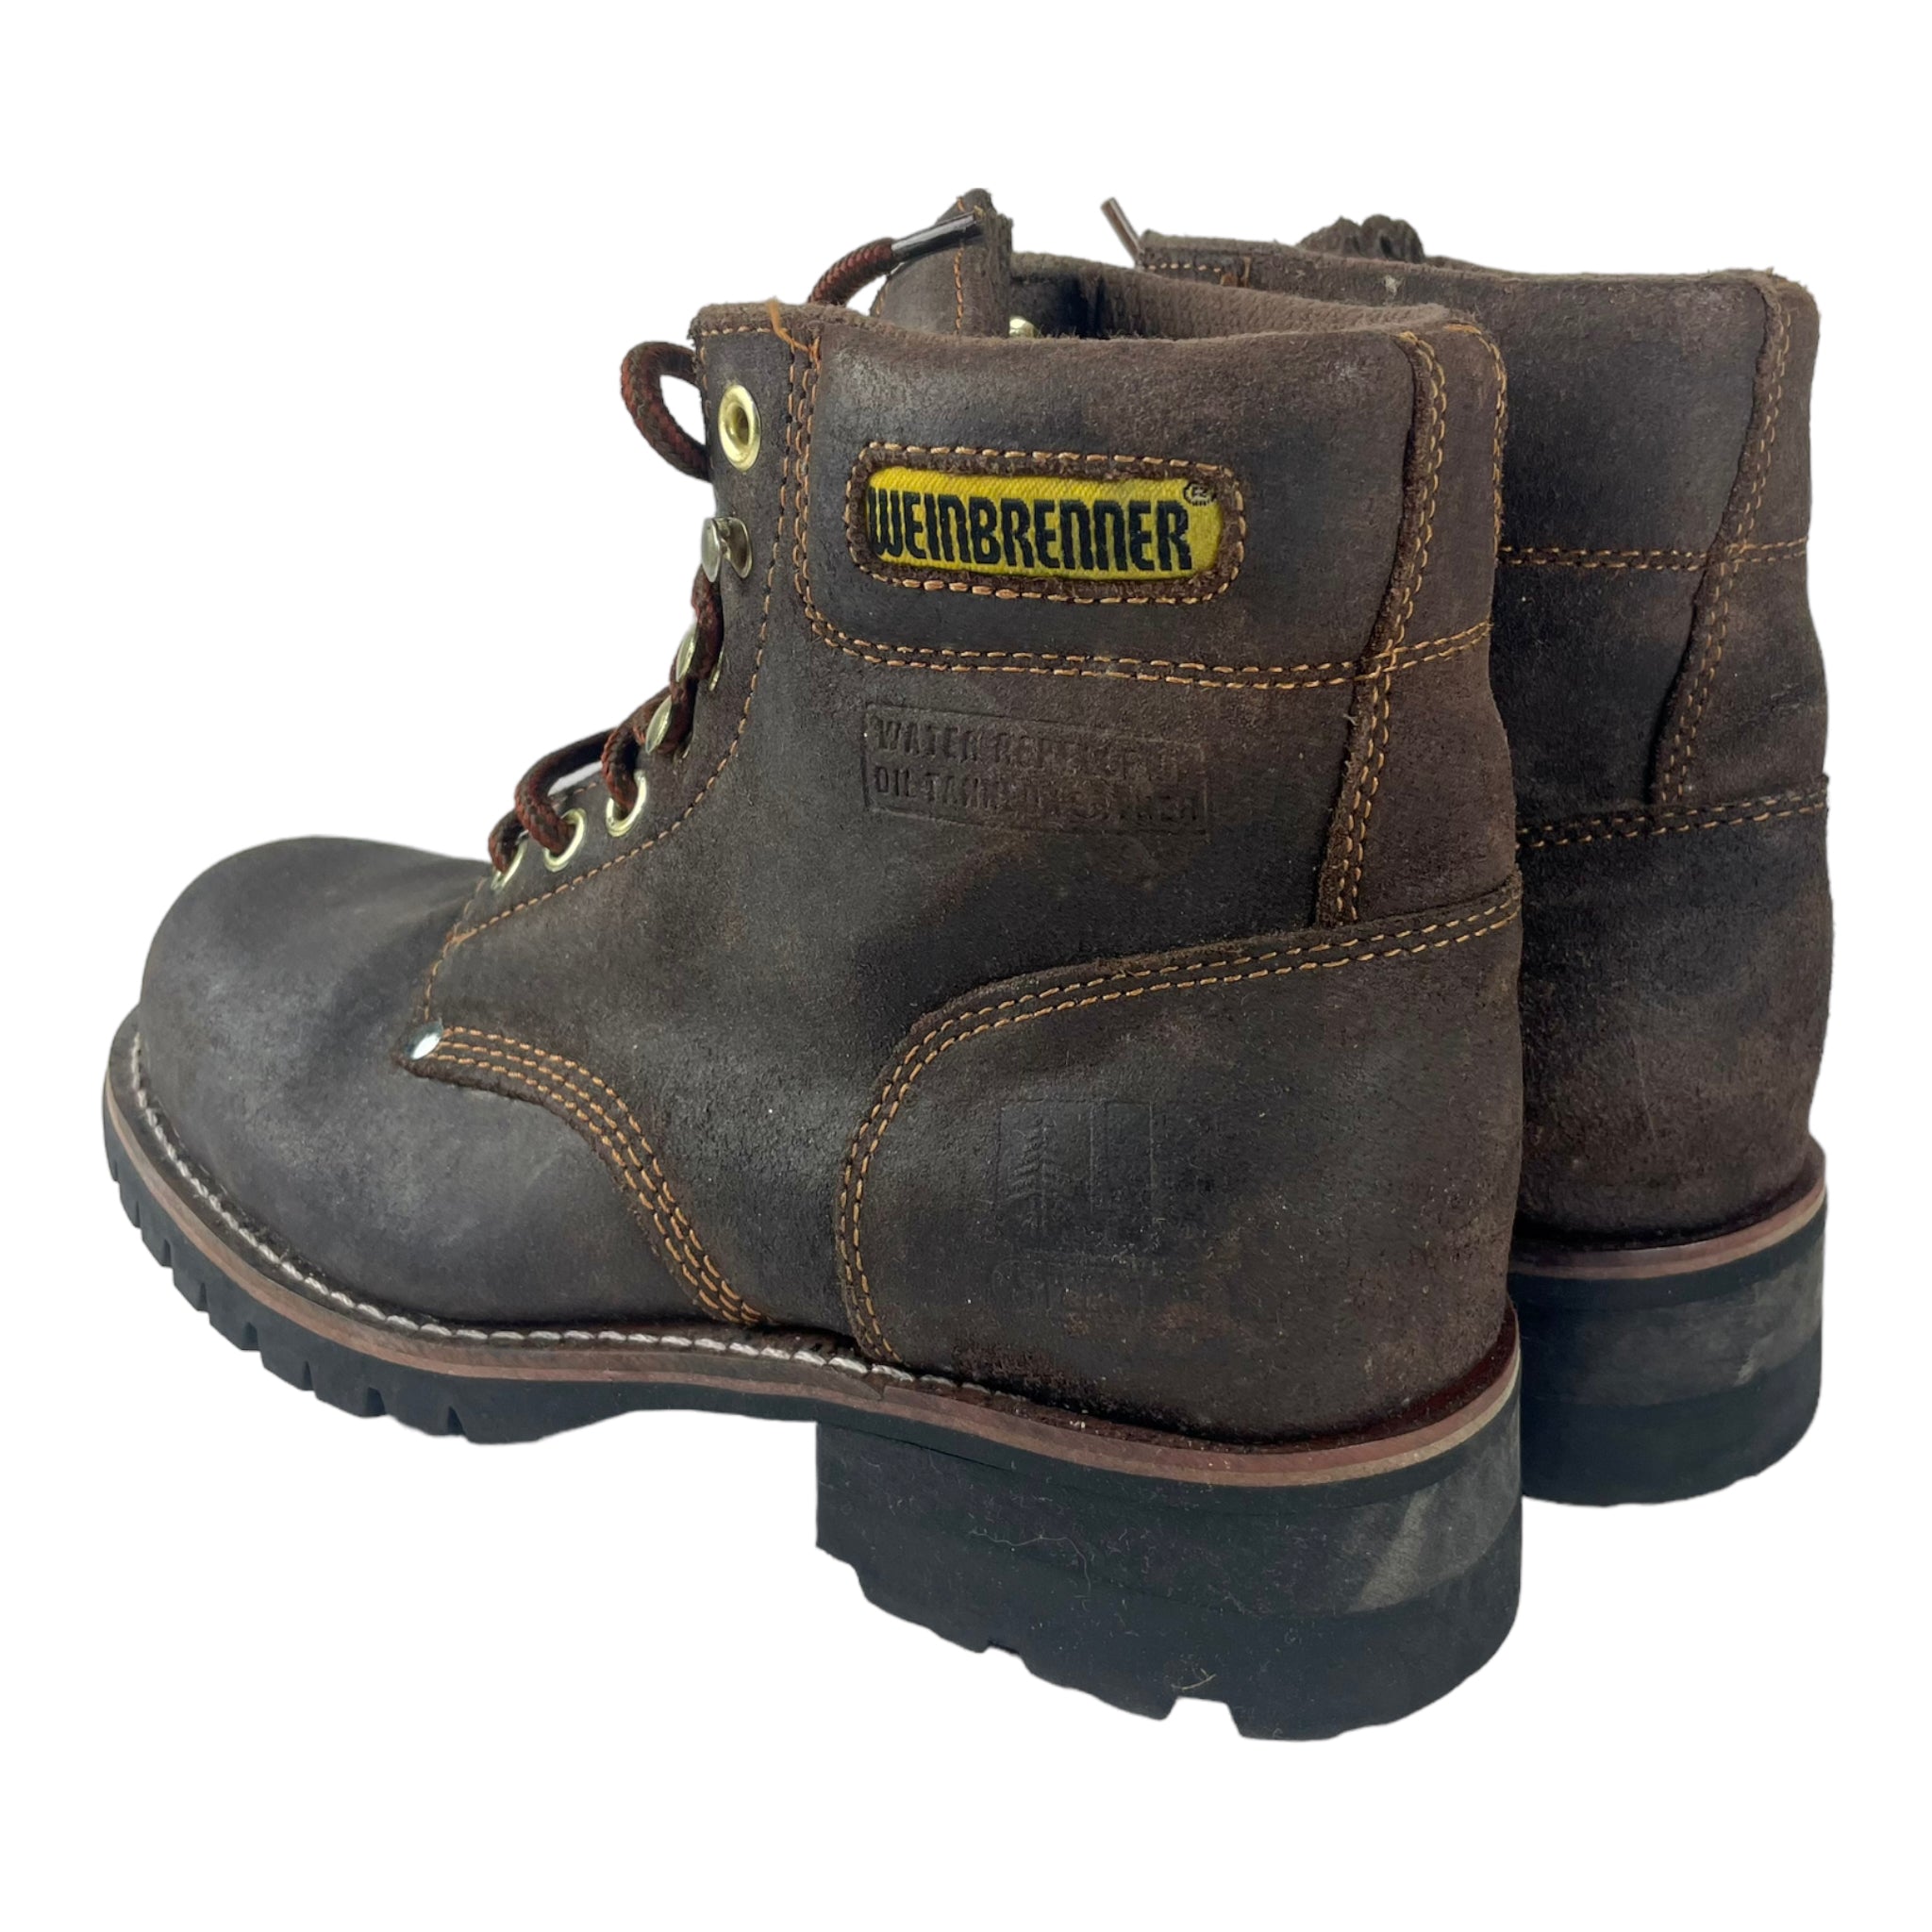 Vintage Steeltoe Lumberjack Boots